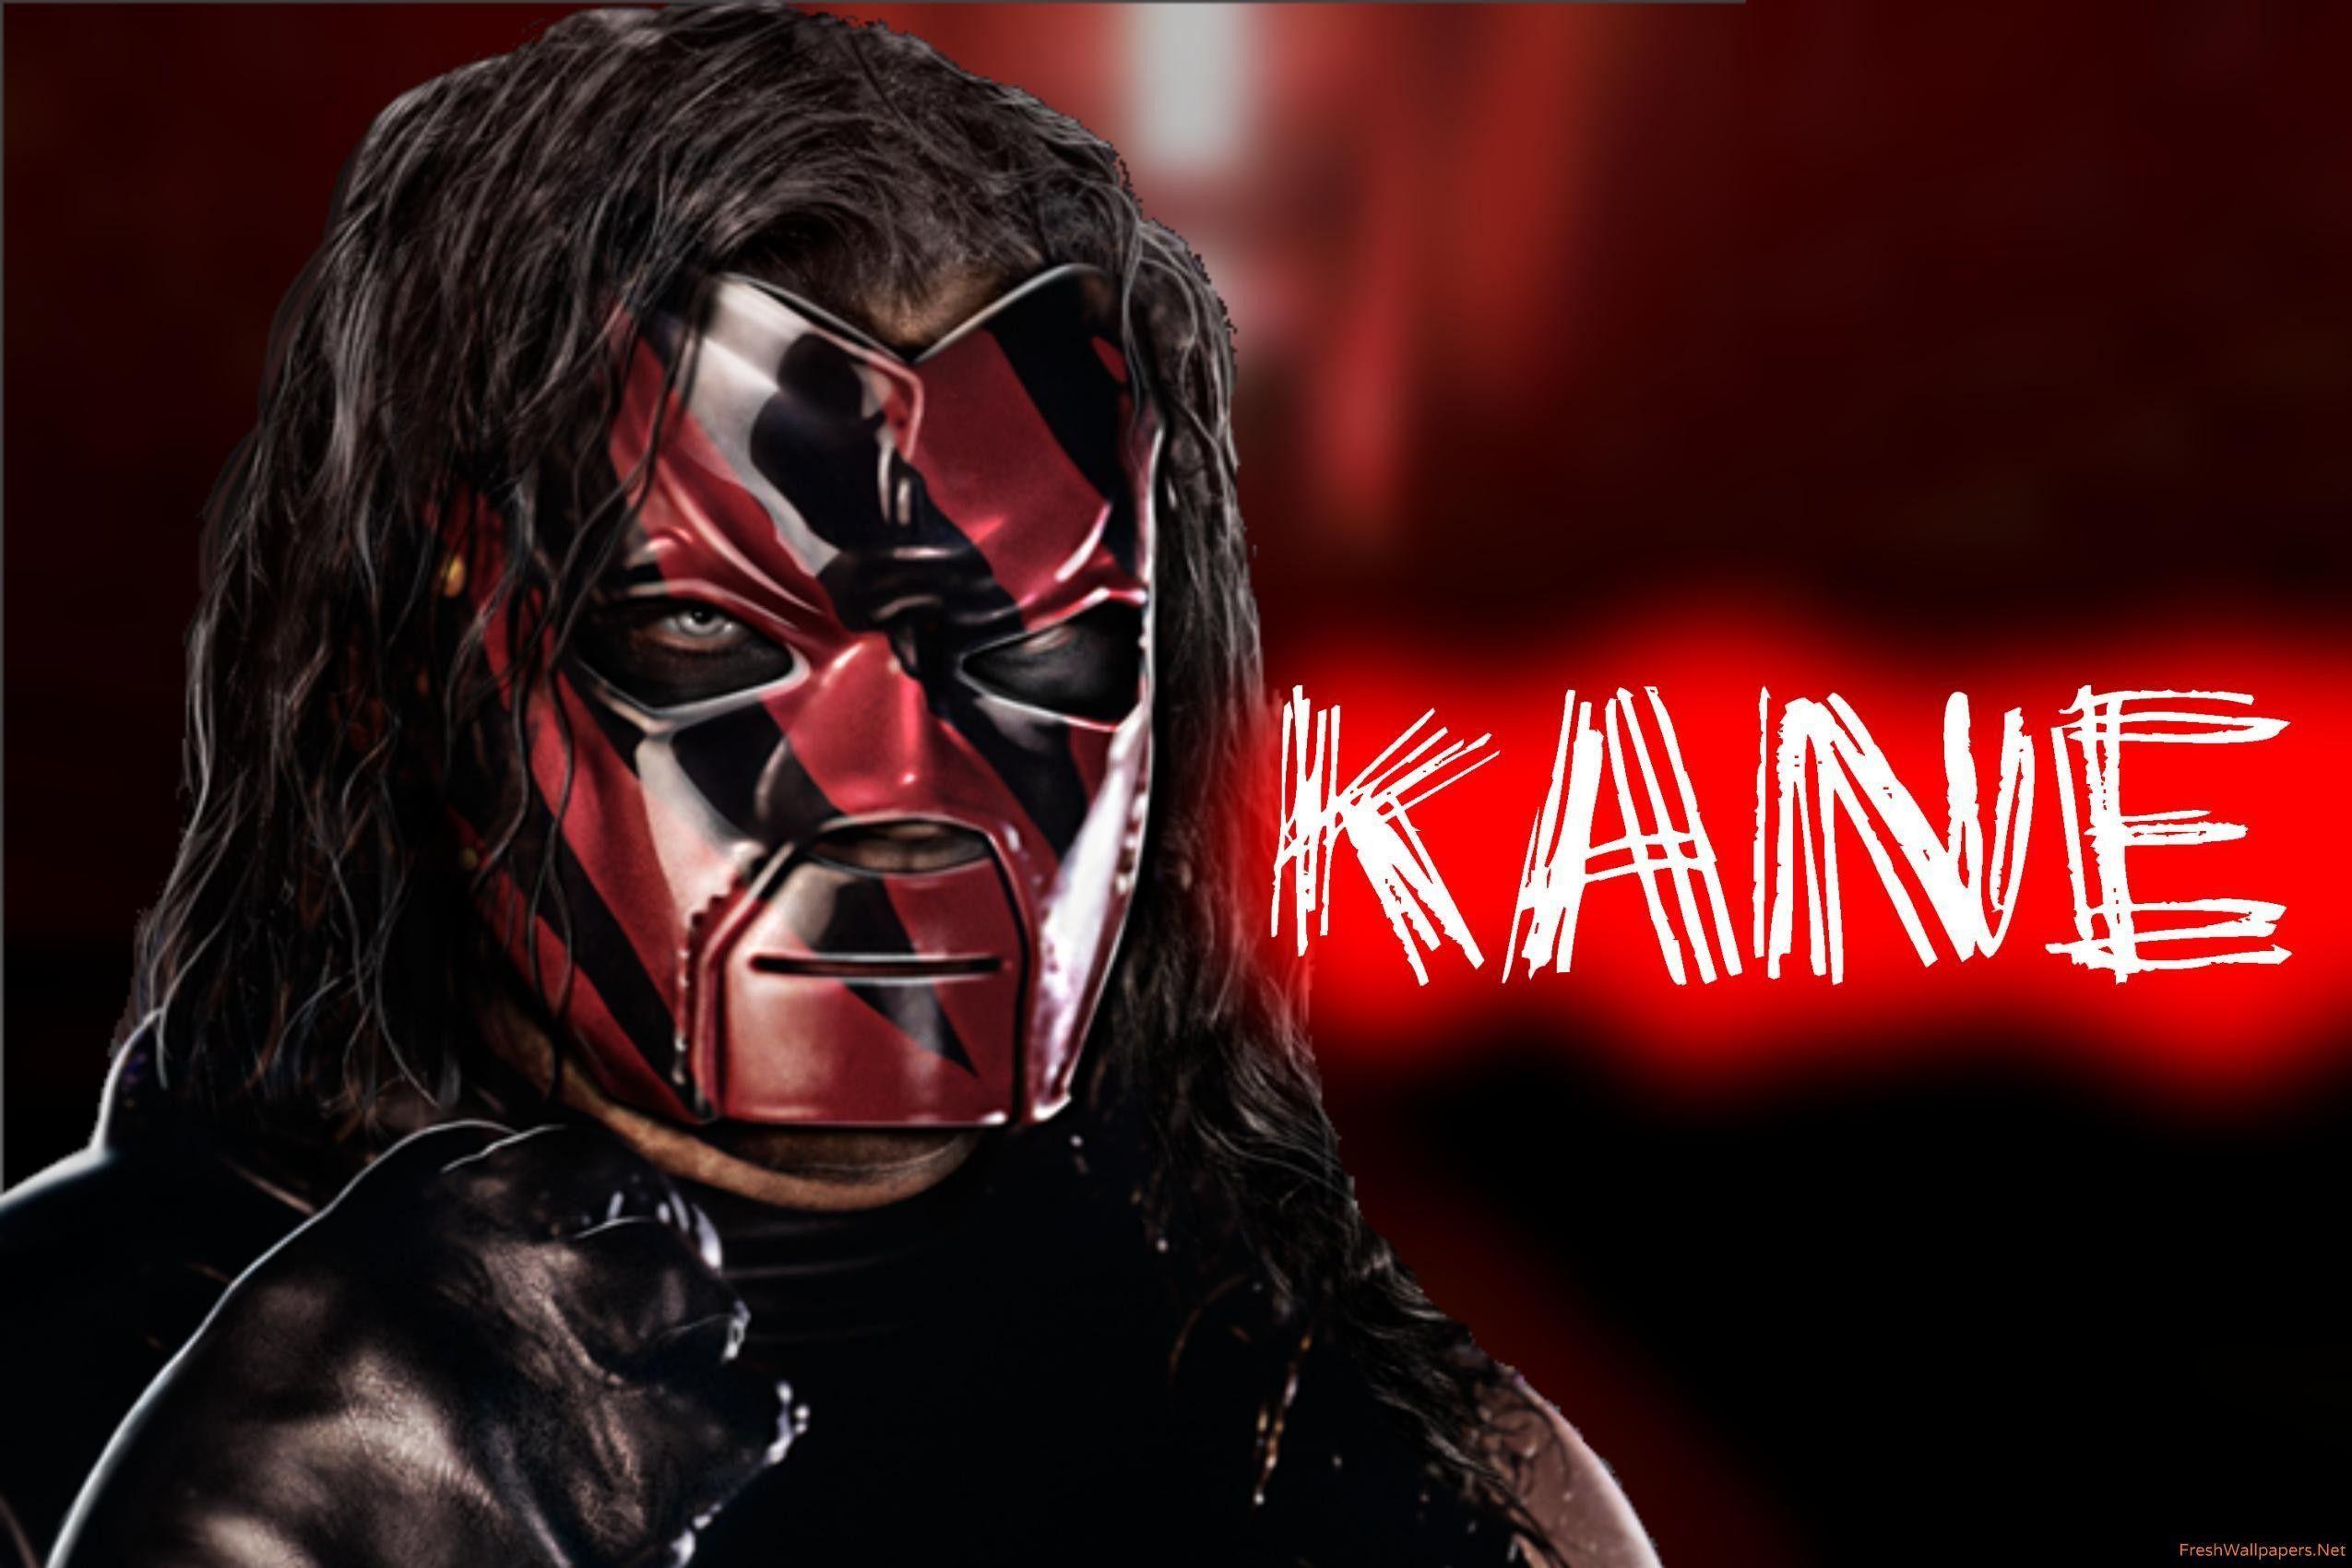 Kane WWE 2015 wallpaper